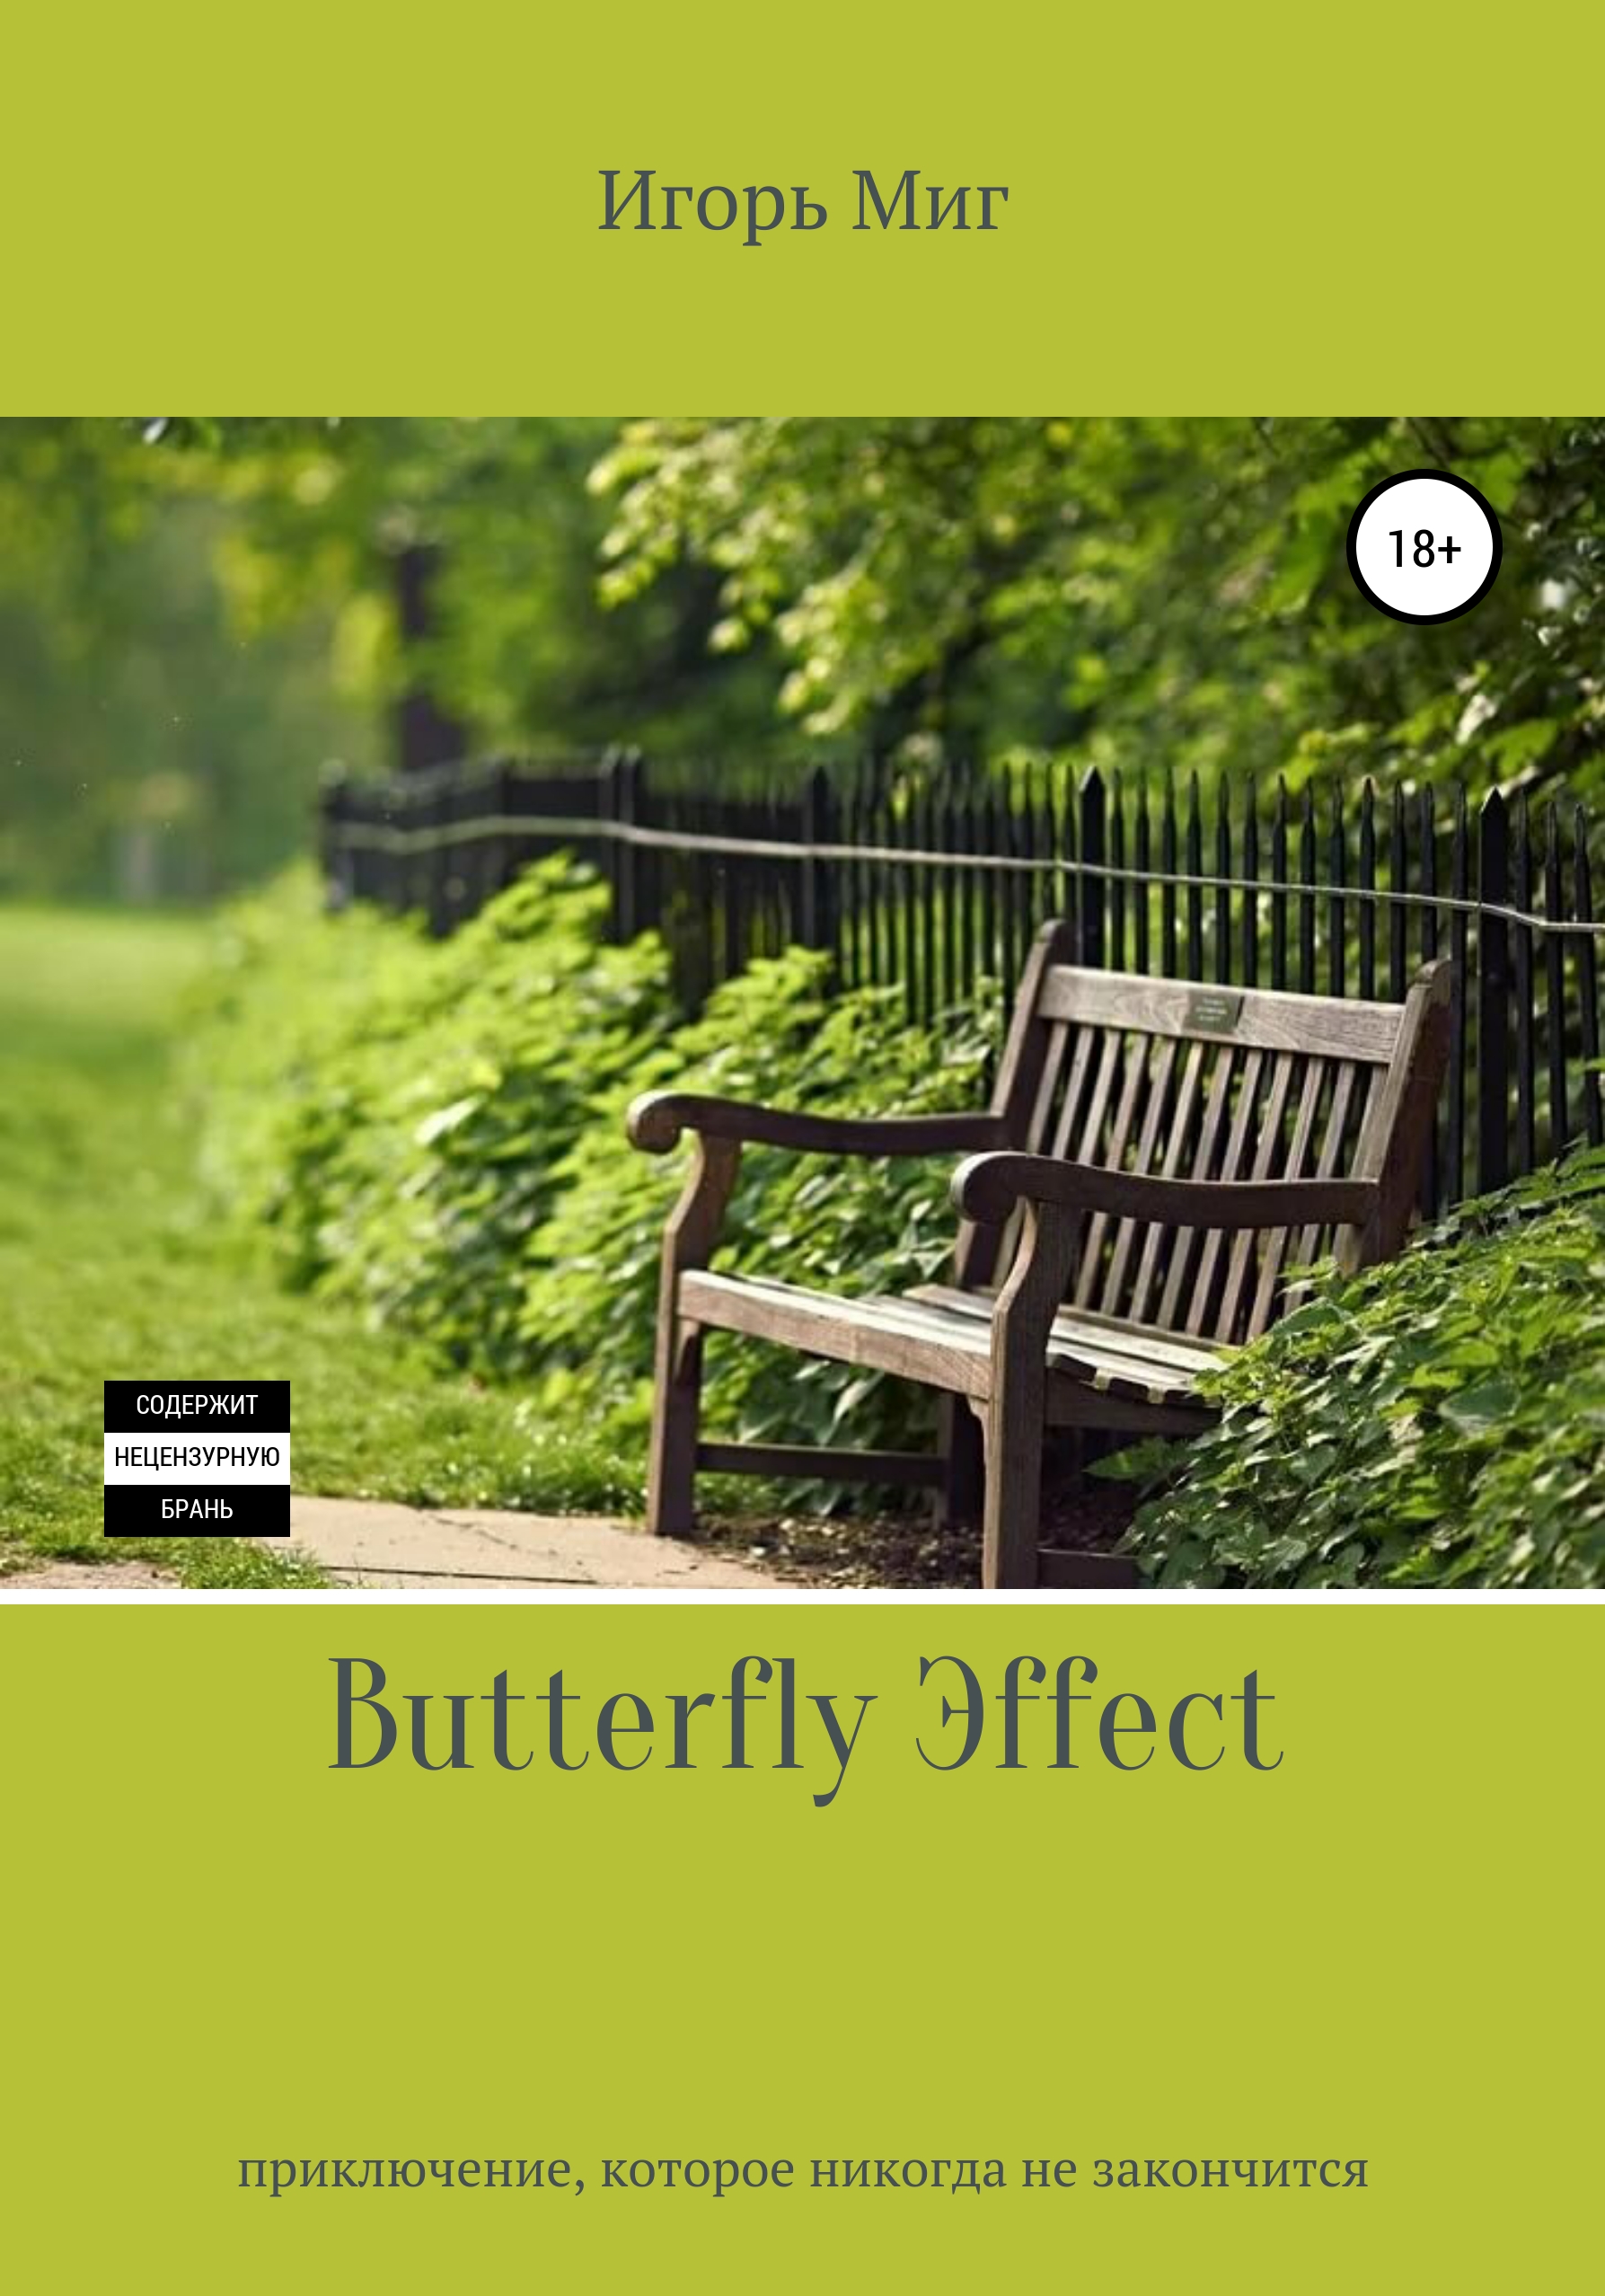 Книга Butterfly Эffect из серии , созданная Игорь Миг, может относится к жанру Юмористическая проза, Контркультура, Самосовершенствование. Стоимость электронной книги Butterfly Эffect с идентификатором 50634112 составляет 0 руб.